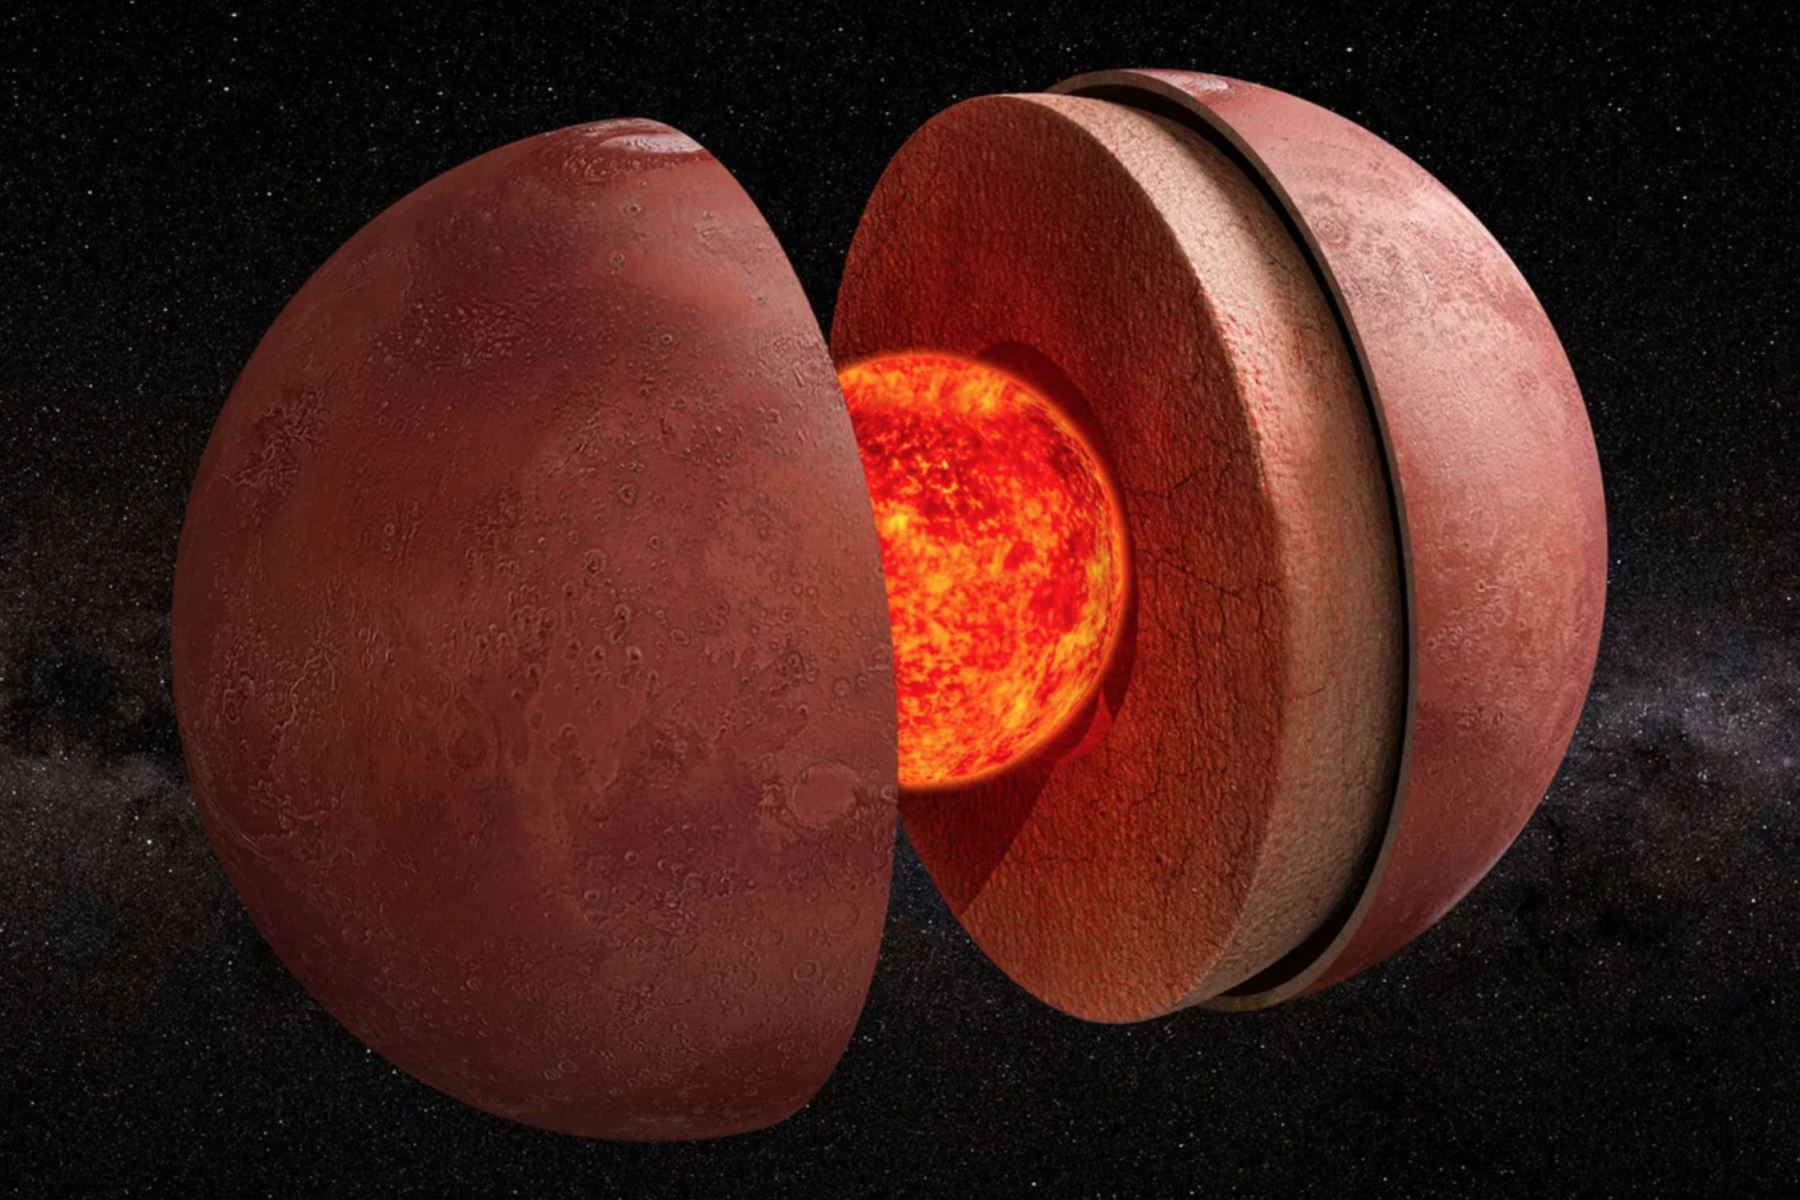 Marte, según los nuevos datos, tendría un núcleo líquido con un radio estimado de entre 1,790 y 1,870 kilómetros. Foto: Internet